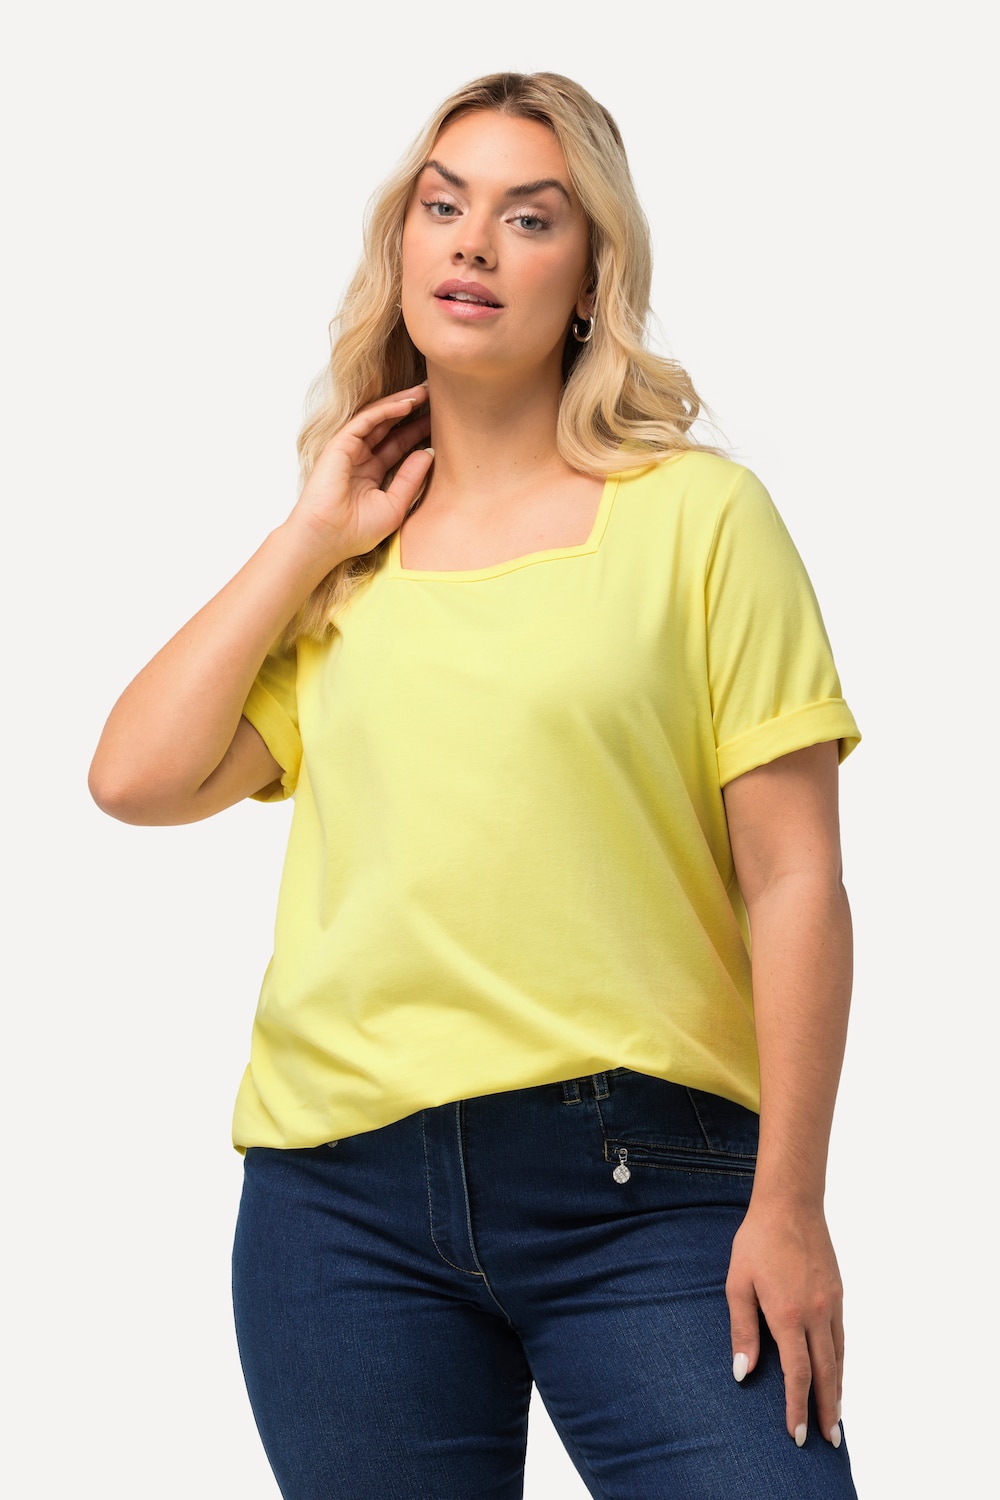 Grote Maten T-shirt, Dames, geel, Maat: 54/56, Katoen, Ulla Popken